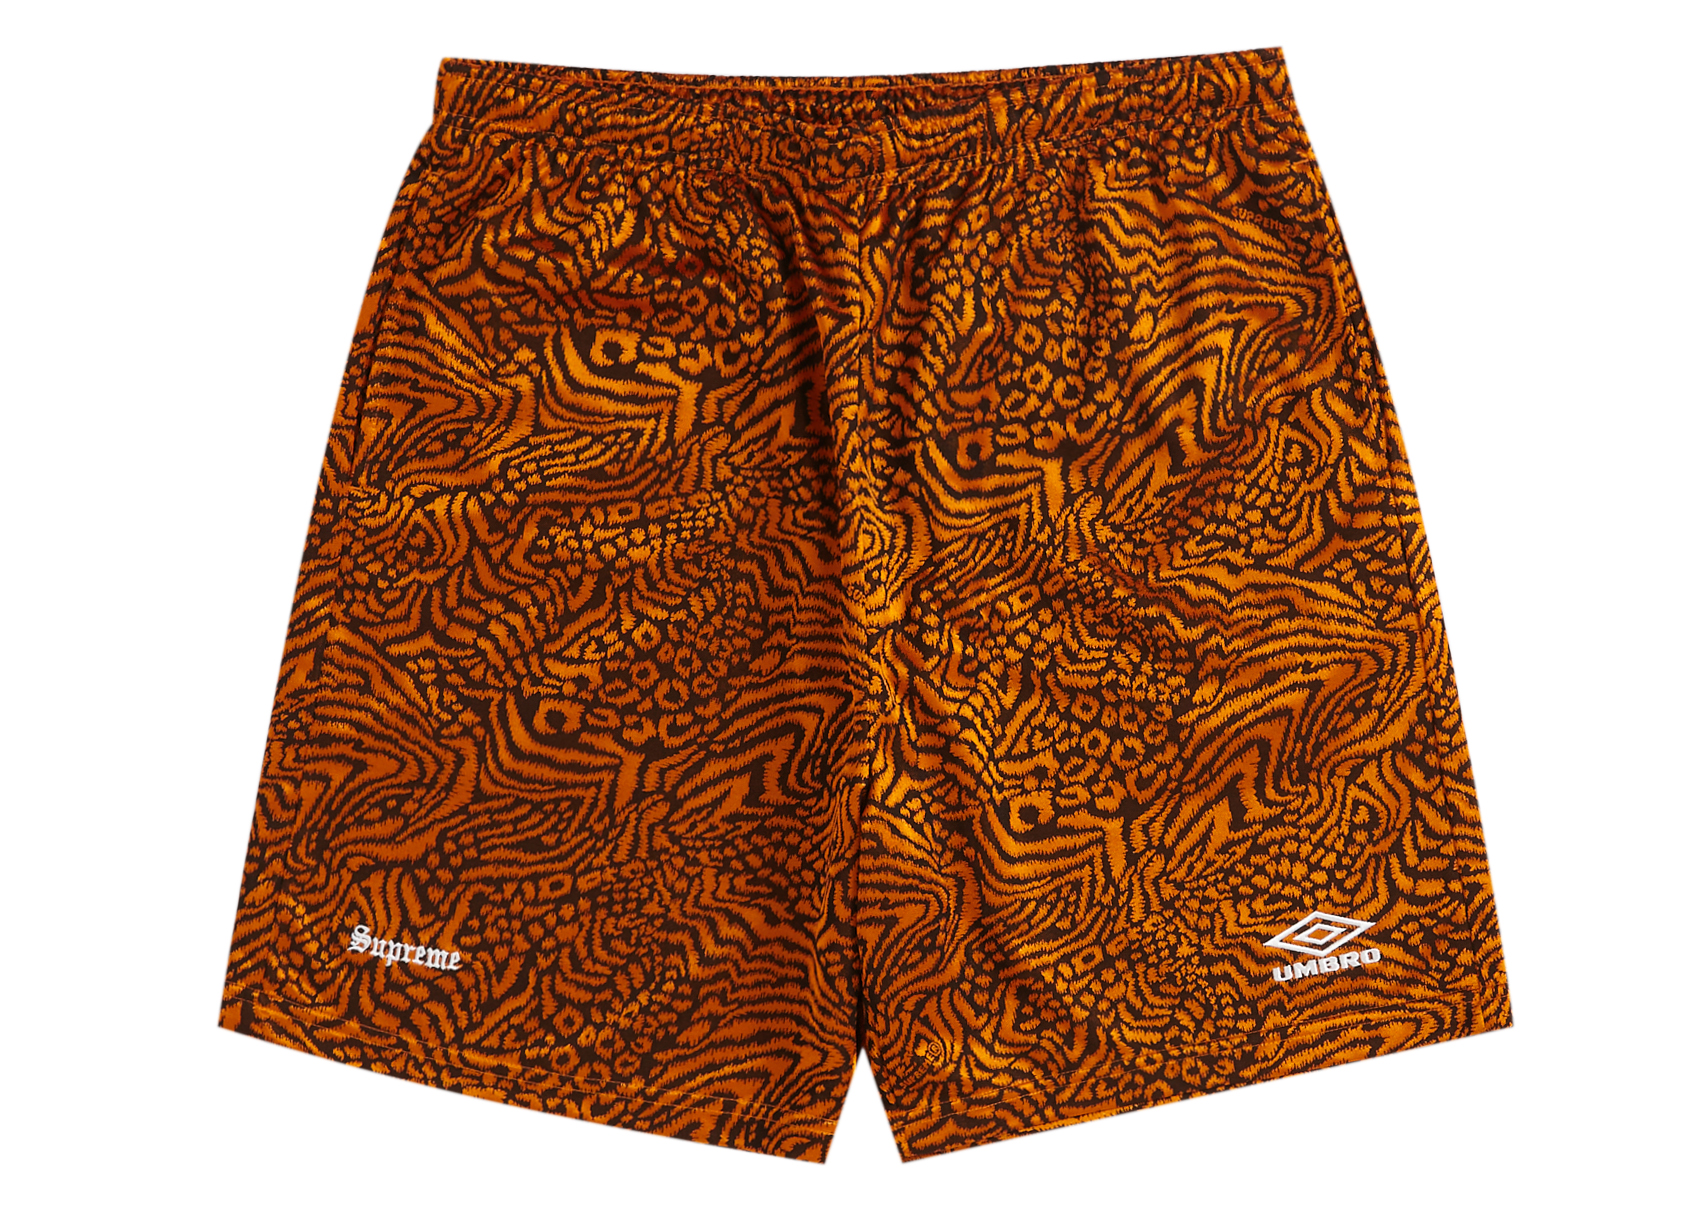 Supreme Umbro Jacquard Animal Print Soccer Short Orange Men's